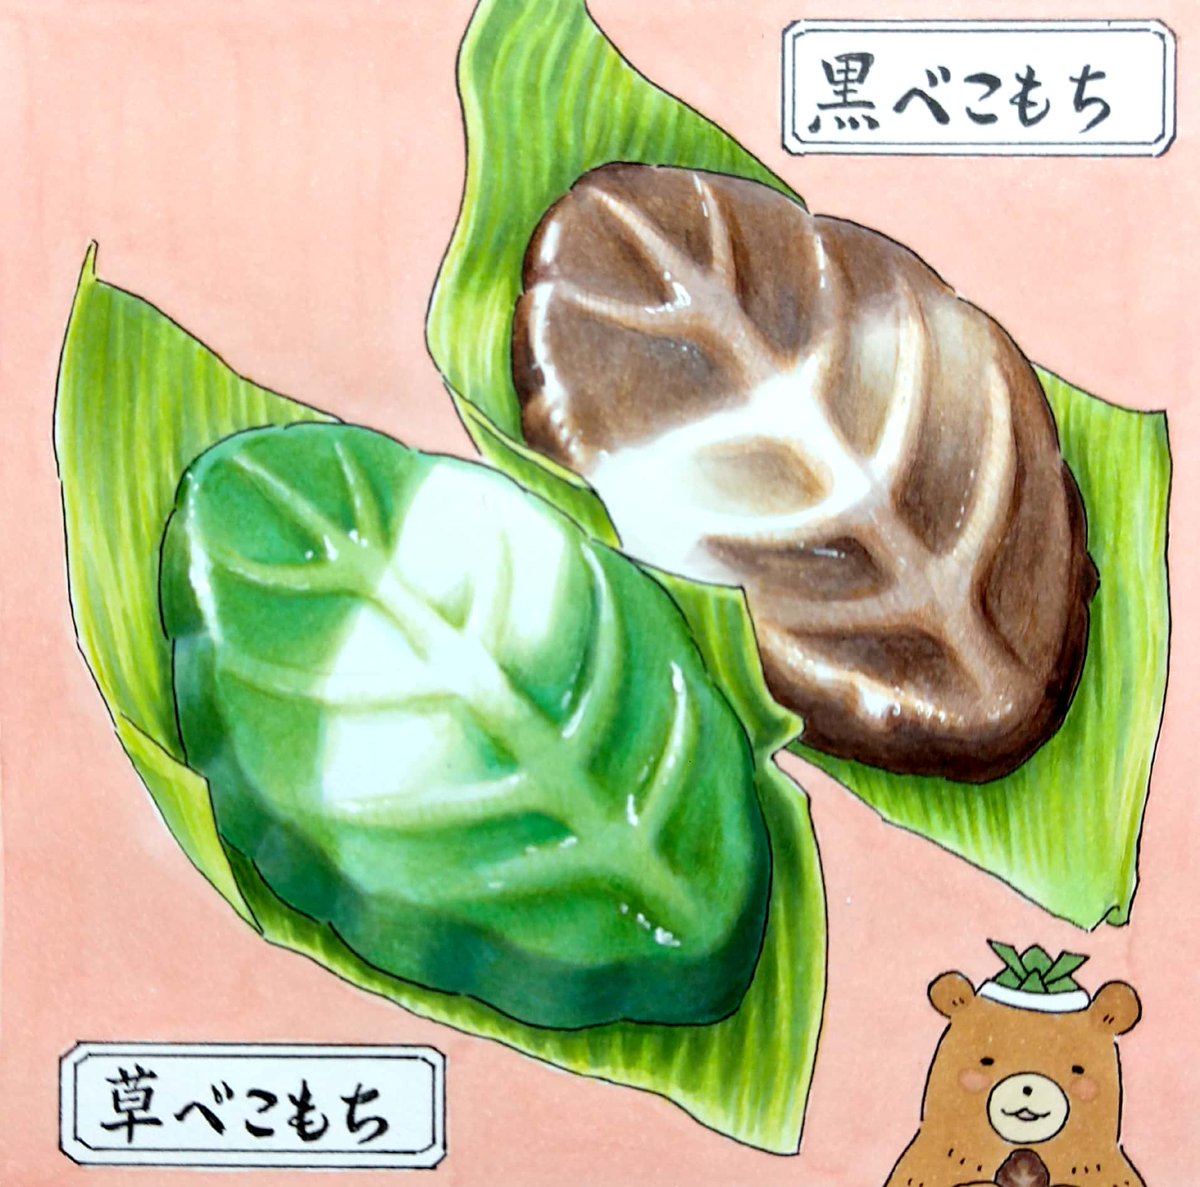 端午の節句。全国的に柏もちが食べられますが北海道ではべこもちが主流。小樽市みなともちさんには黒糖味の「黒べこ」、ヨモギいりの「草べこ」もあります。 #田島ハルのくいしん簿